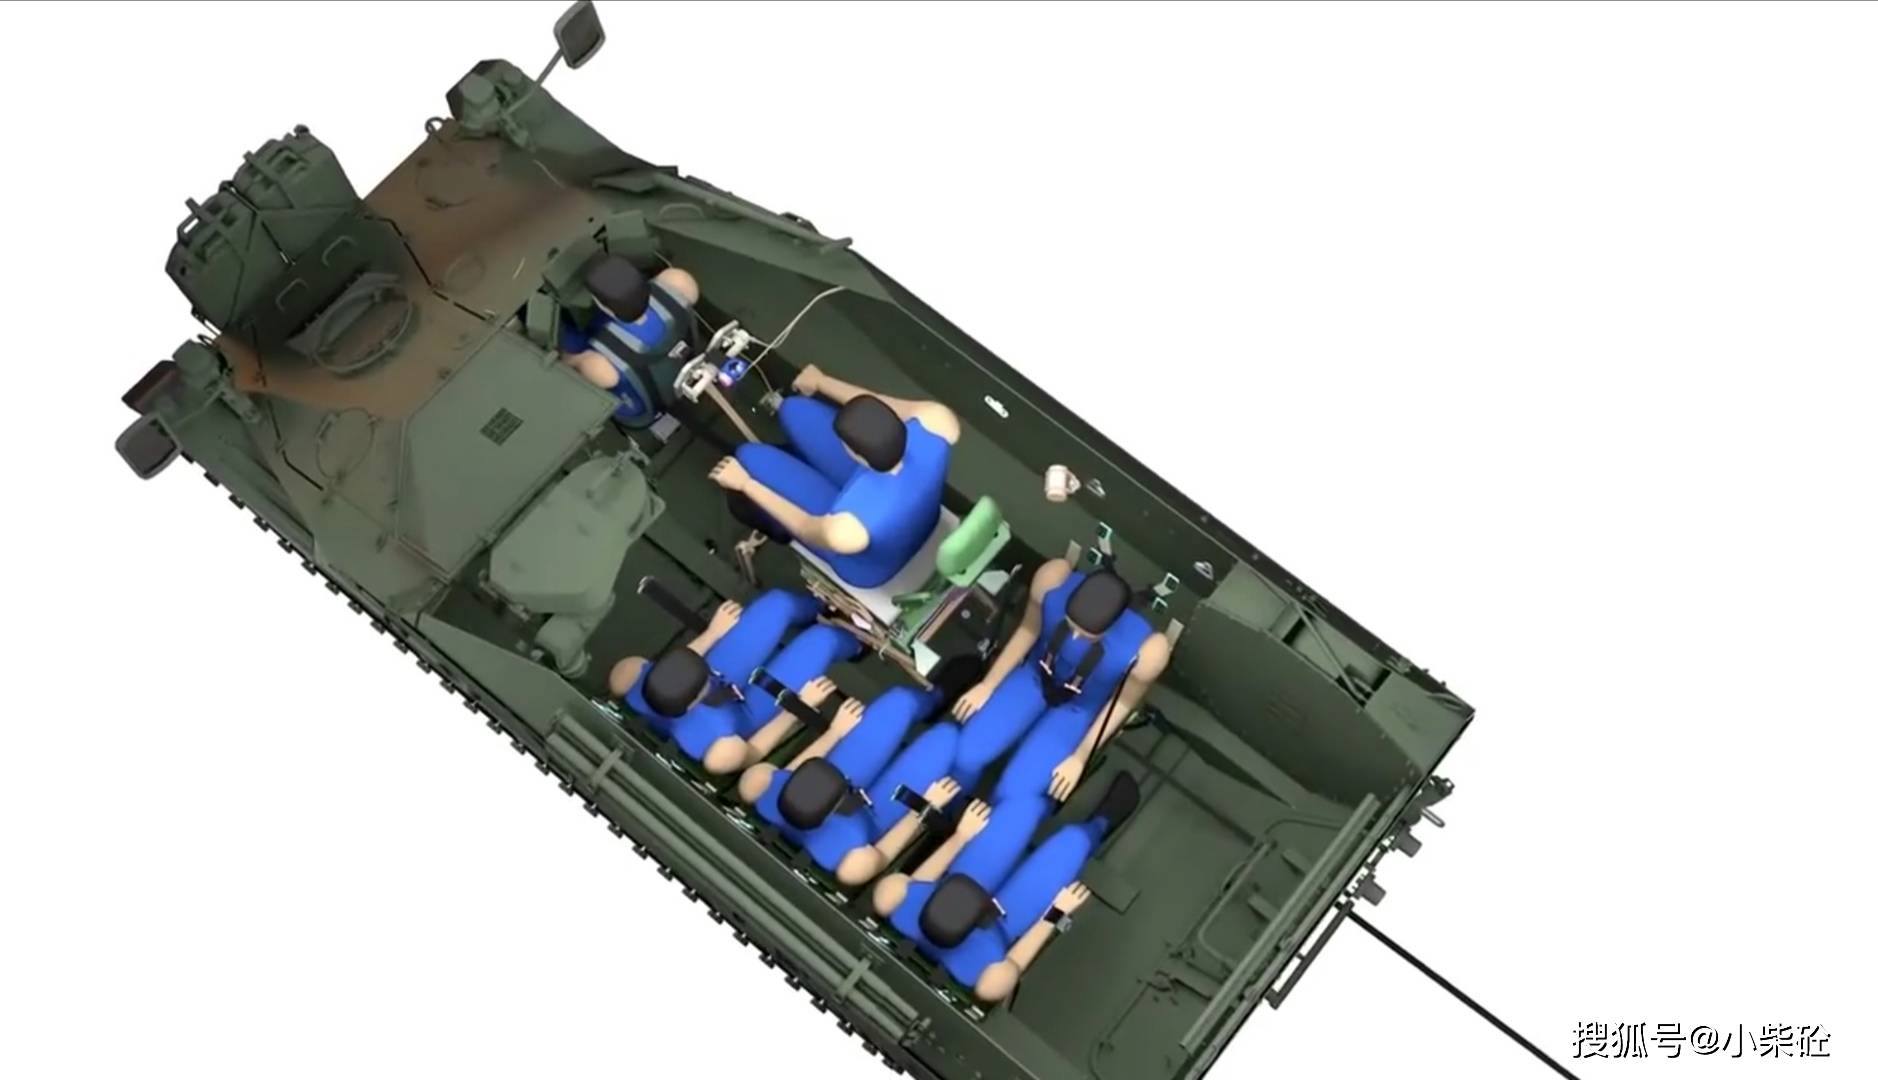 装甲运兵车型能搭载四名士兵(前面是驾驶员和车长,而且内部并不拥挤